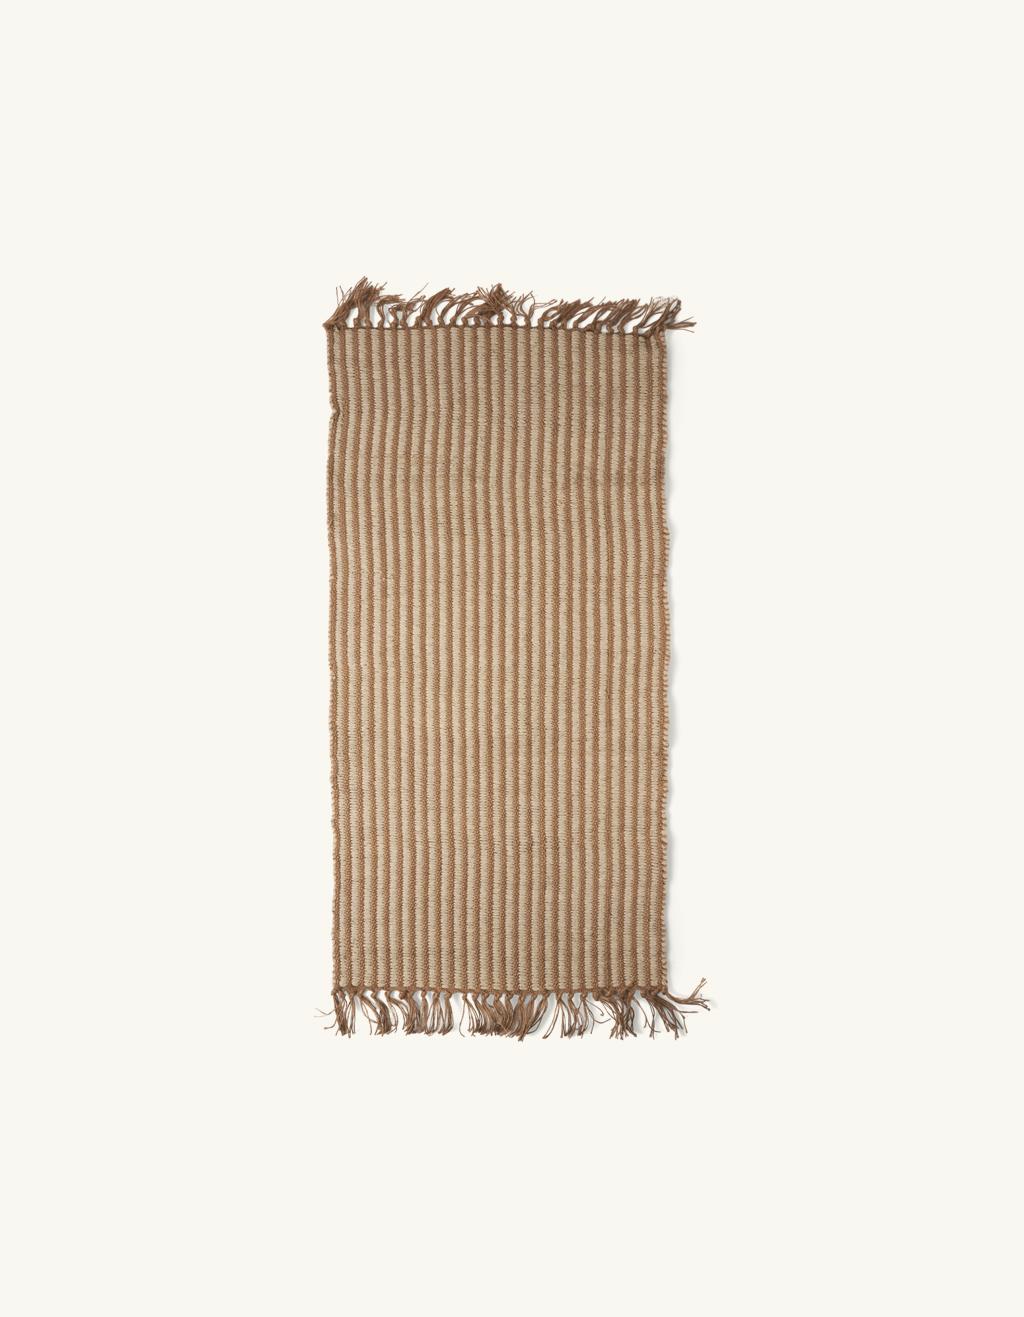 levenslang slinger galop Vloerkleed | Jute/katoen. 120 x 60 cm. | Søstrene Grene